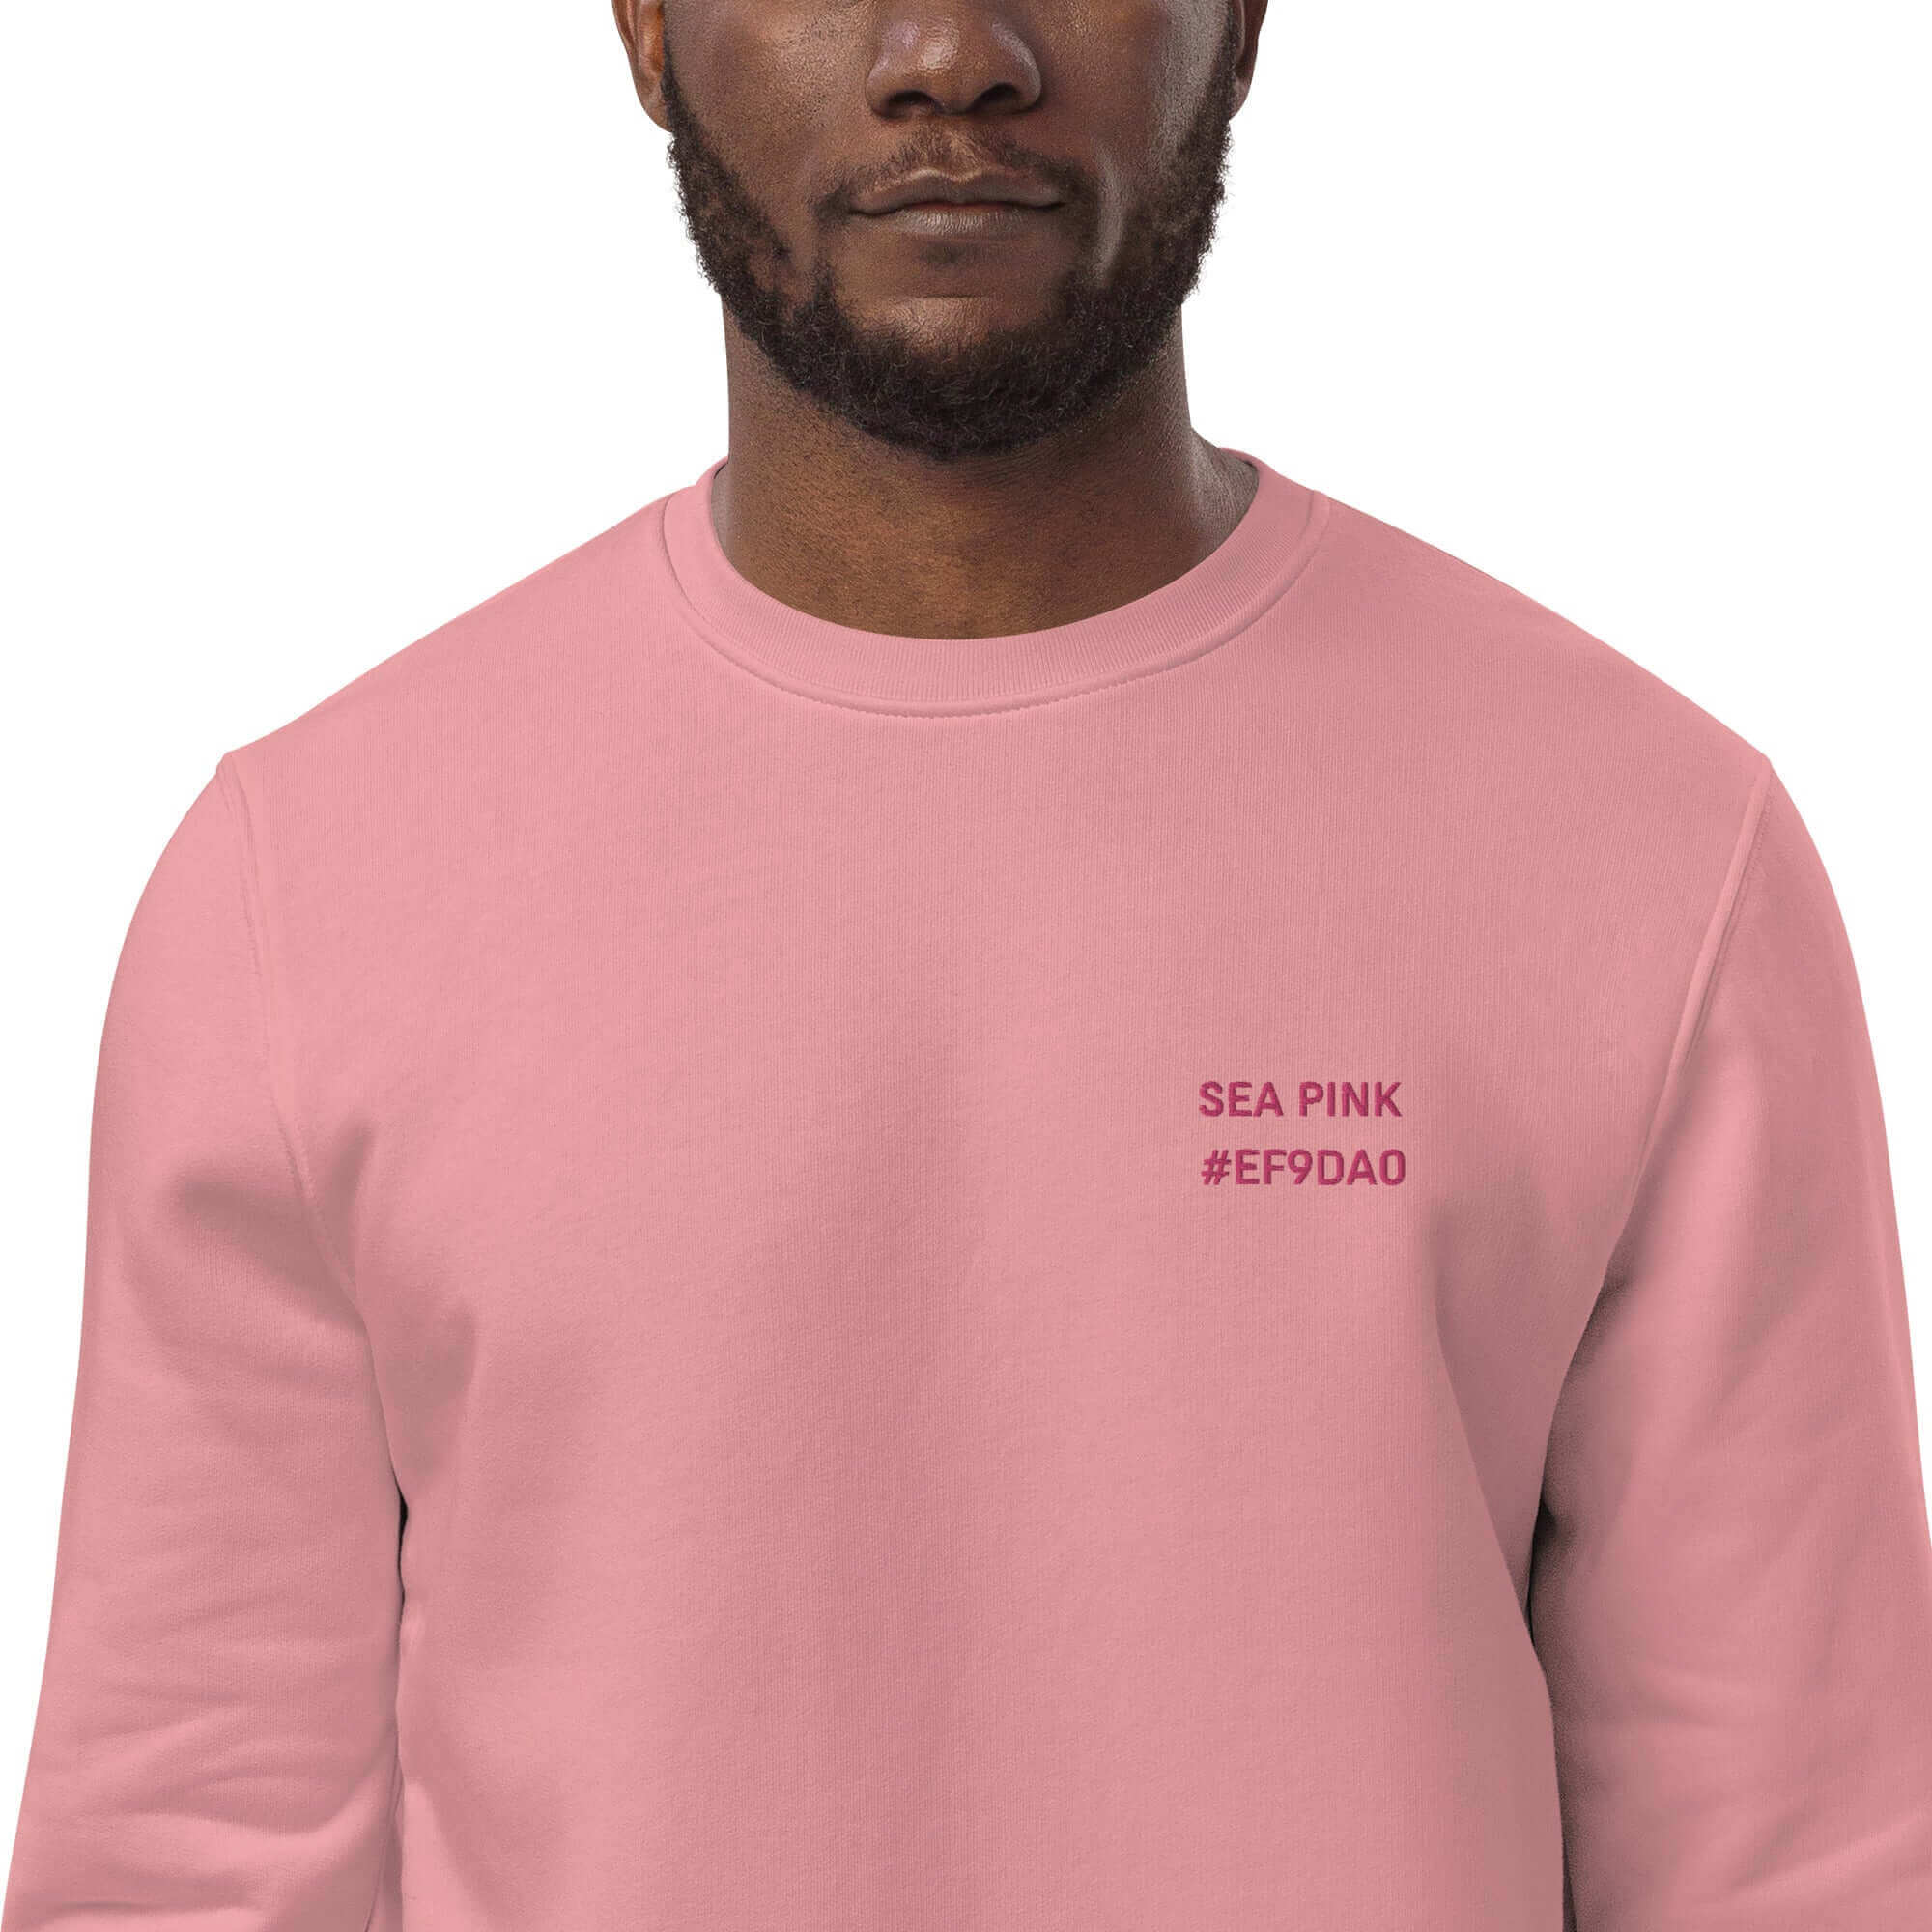 Heavy Sea Pink Sweatshirt, #EF9DA0